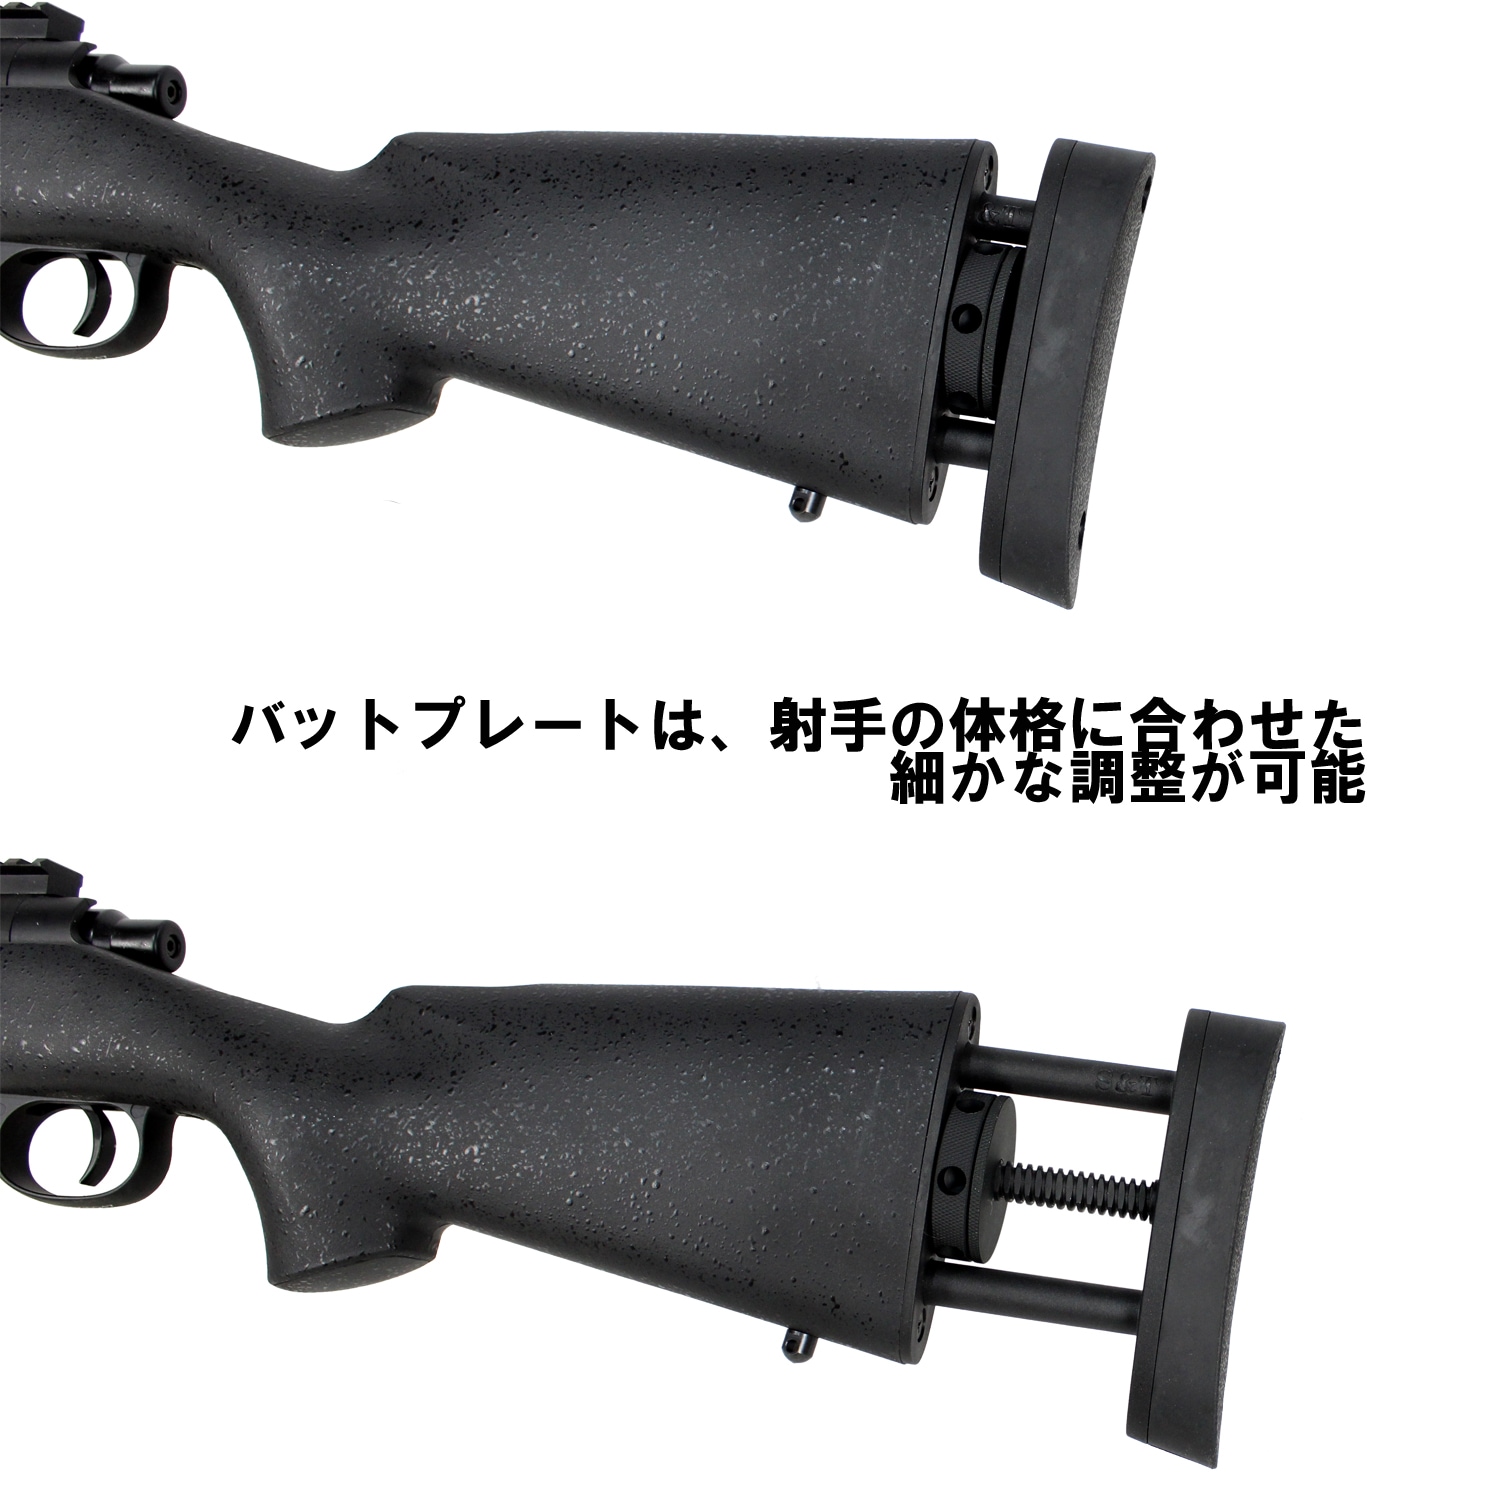 期間限定S&T ボルトアクションライフル M24 BK スコープ付 中古美品(VSR M40 M700 エアガン